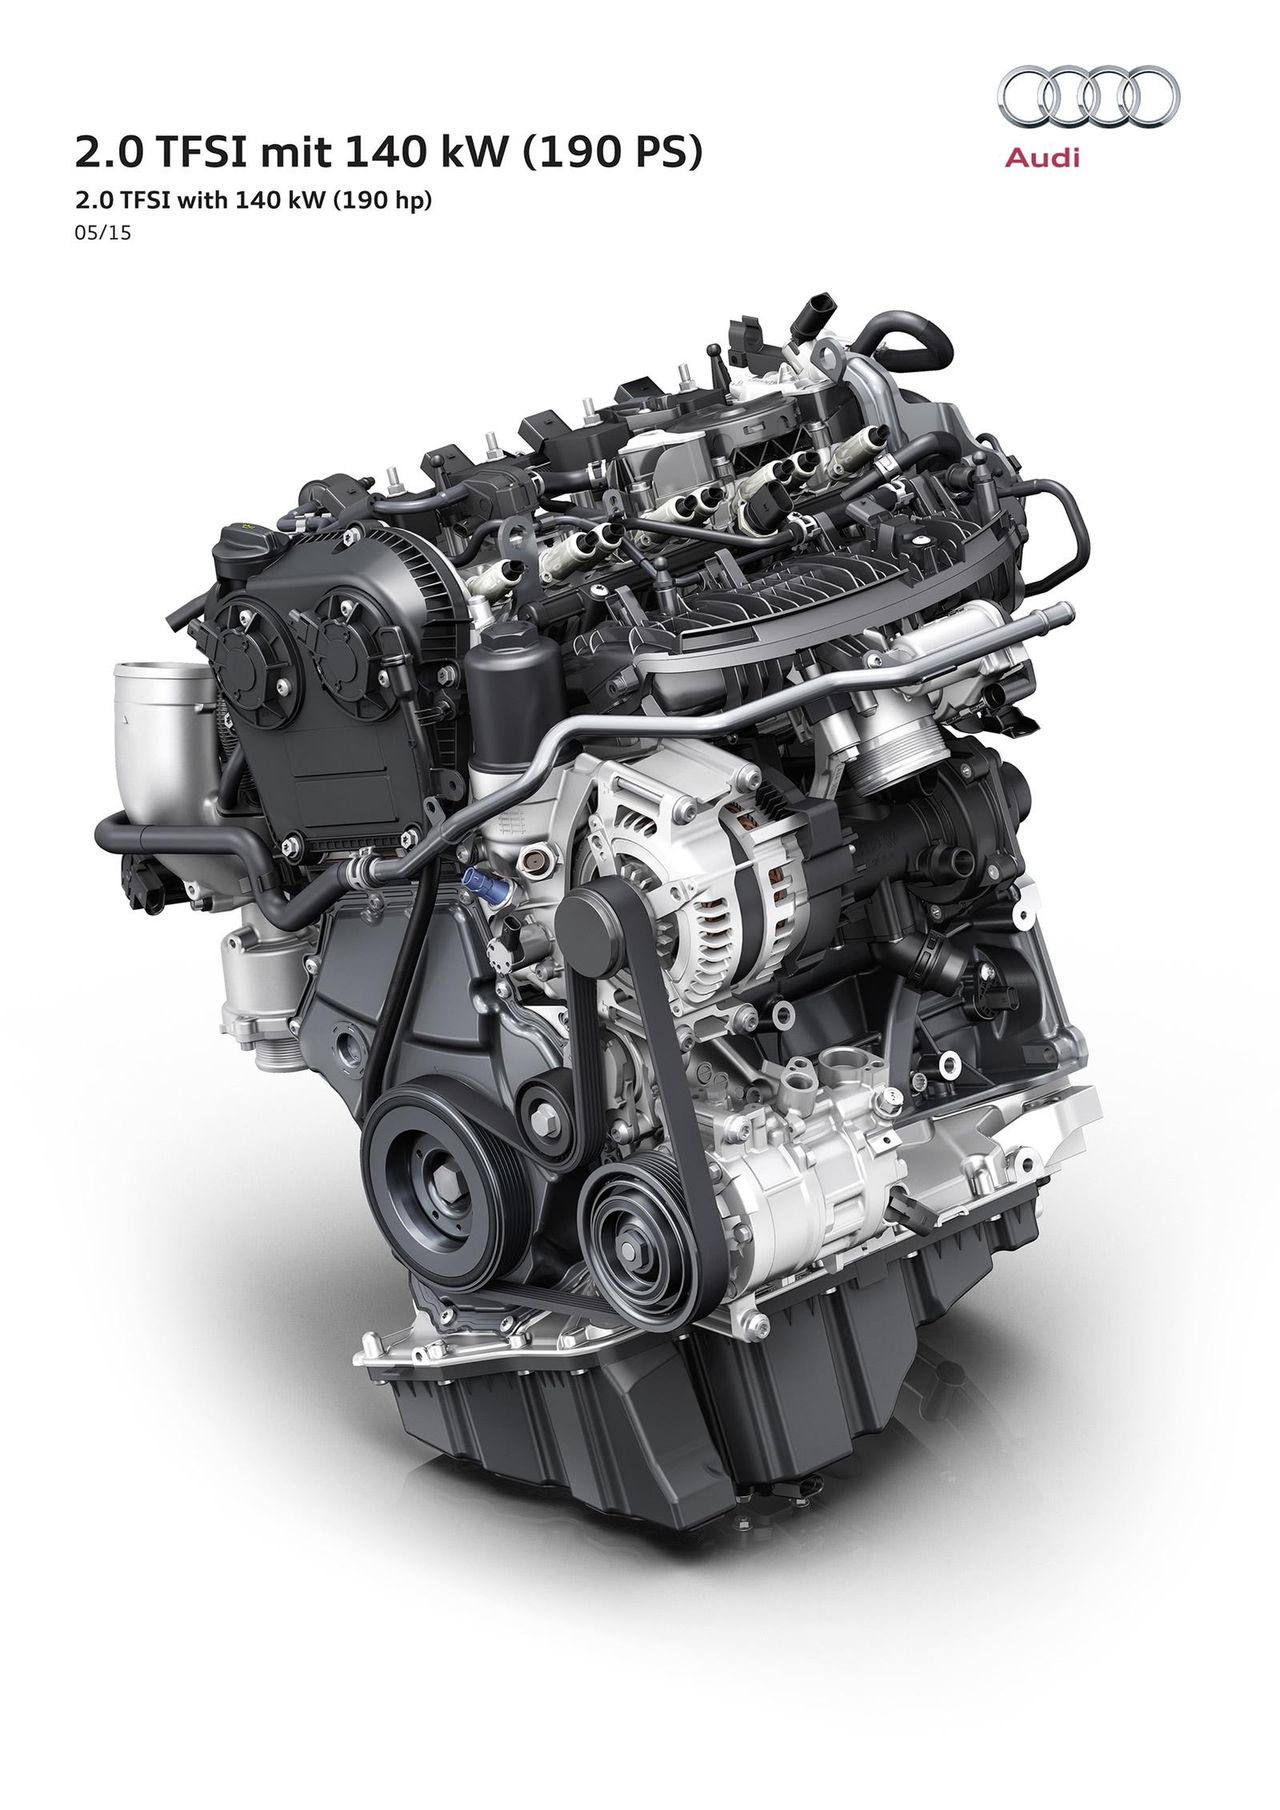 2,0 TFSI - nowy silnik w rodzinie Audi. Zadebiutuje w A4